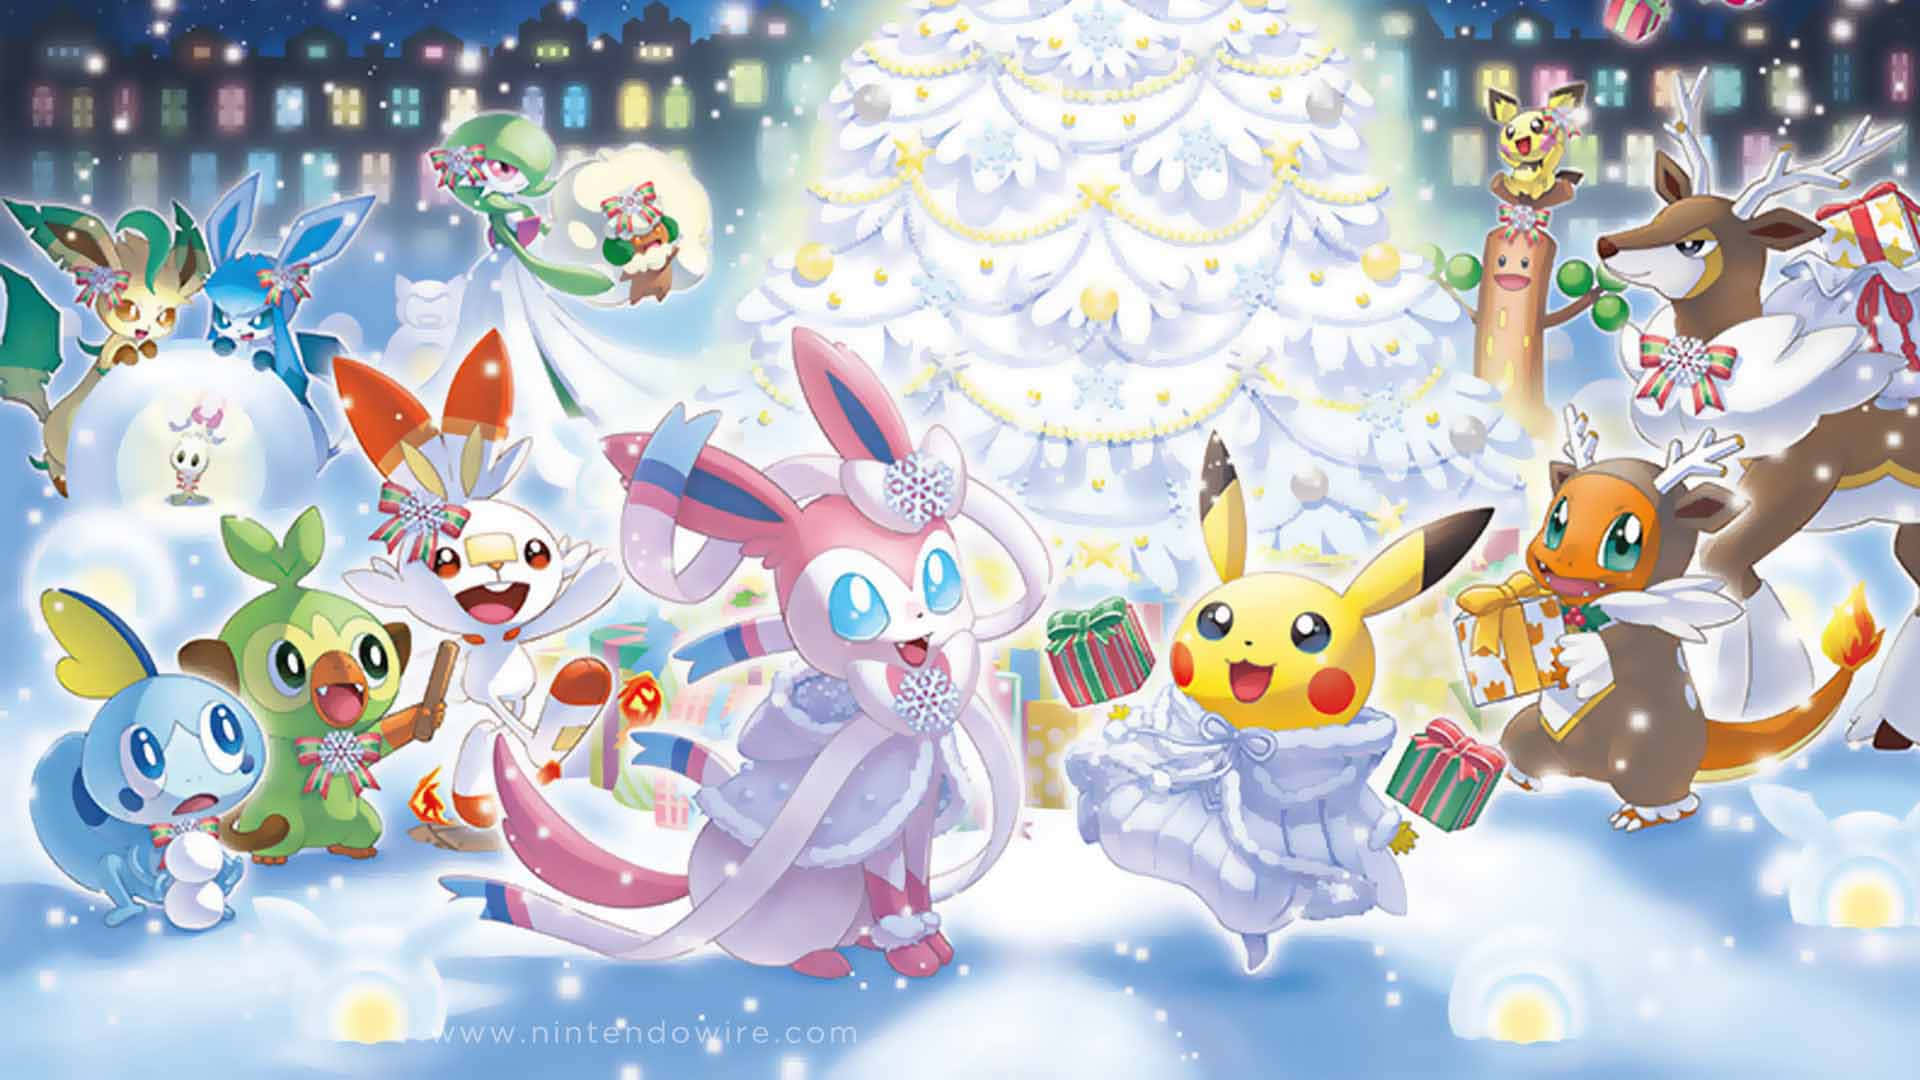 Weißthematische Pokémon-weihnachtsparty Wallpaper